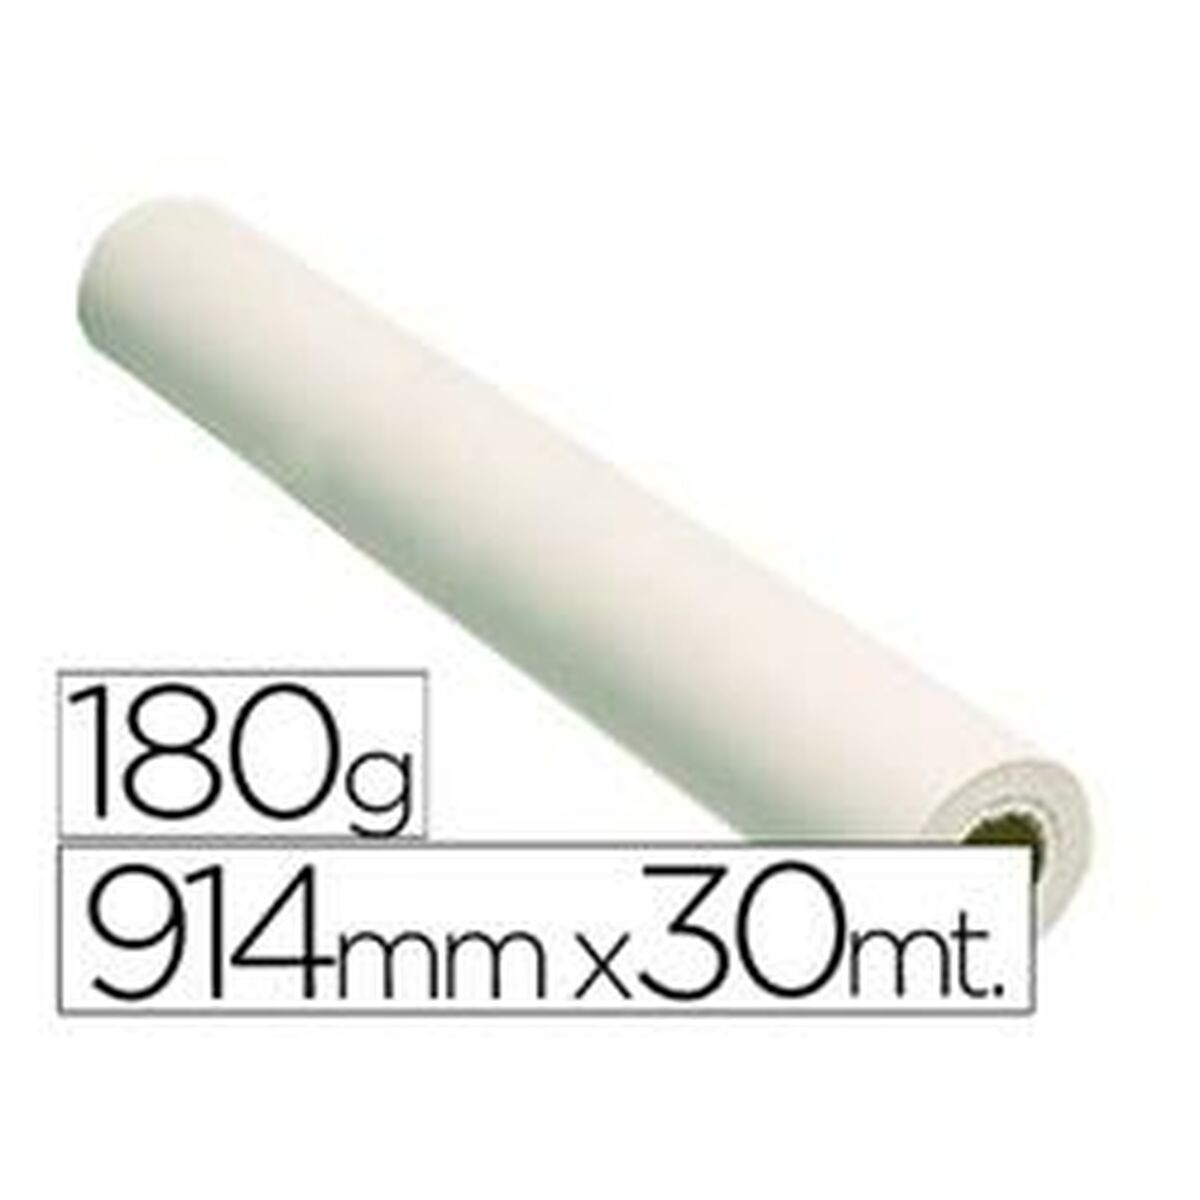 Rouleau de papier pour traceur Fabrisa 16107 914 mm x 30 m